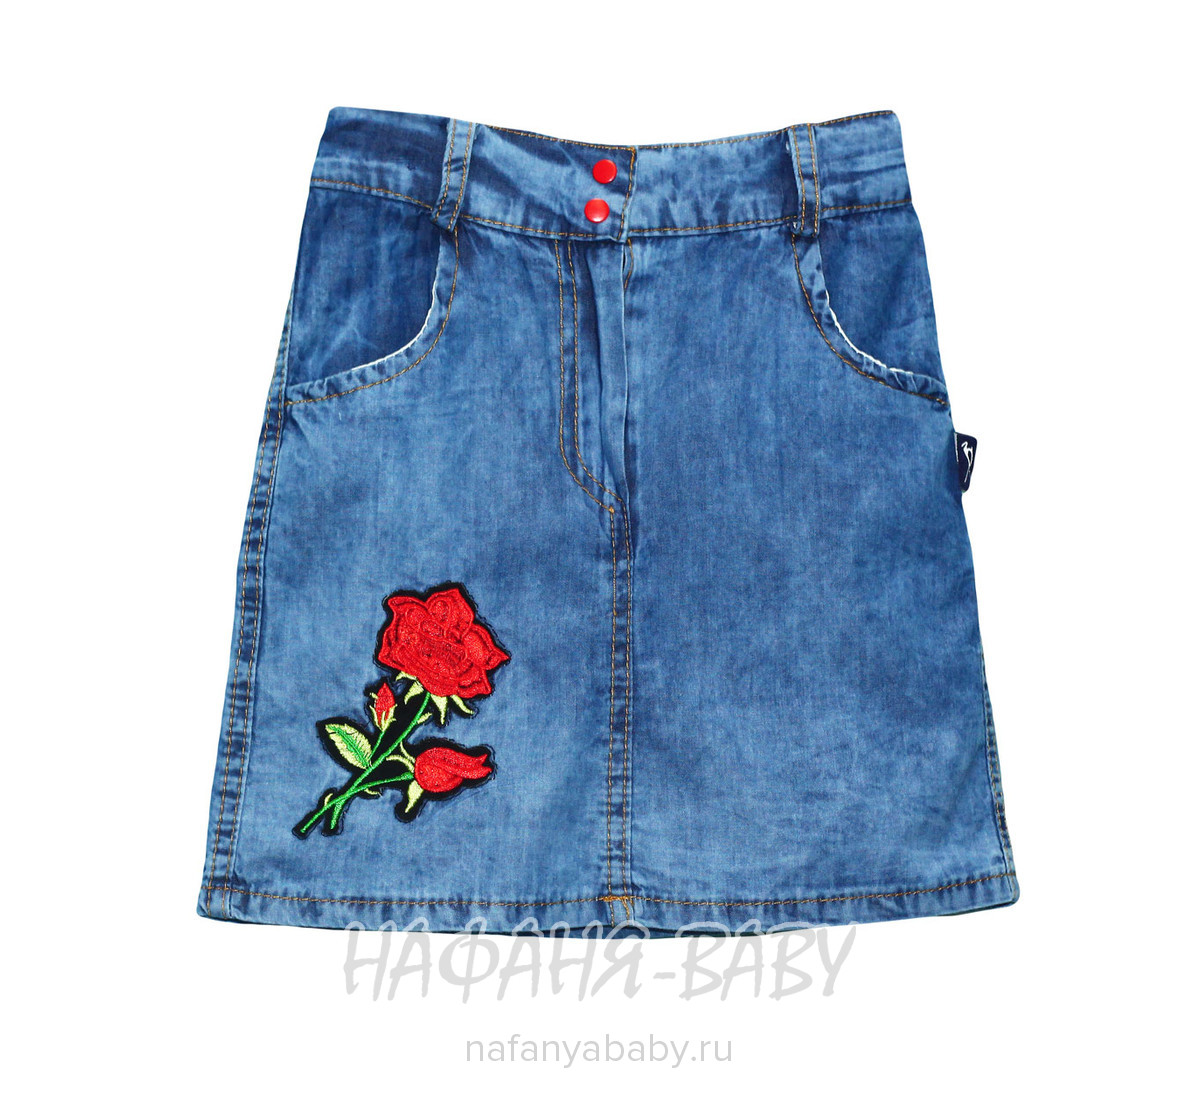 Детская джинсовая юбка AKIRA, купить в интернет магазине Нафаня. арт: 2108.